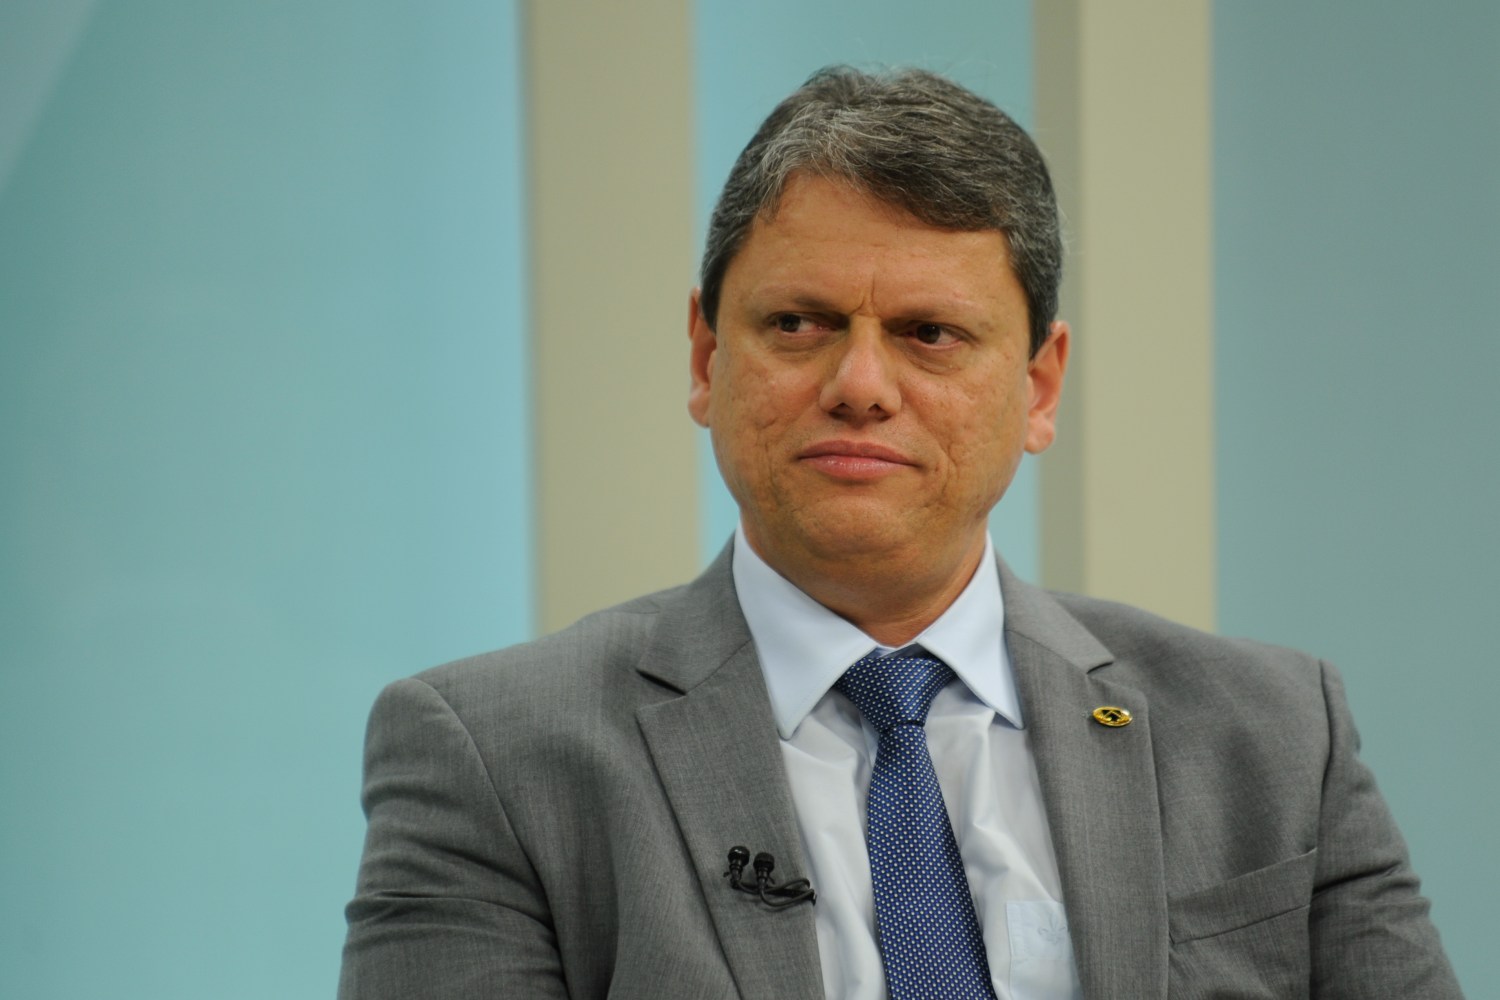 O ministro da Infraestrutura, Tarcísio de Freitas, participa do programa Brasil em Pauta na TV Brasil